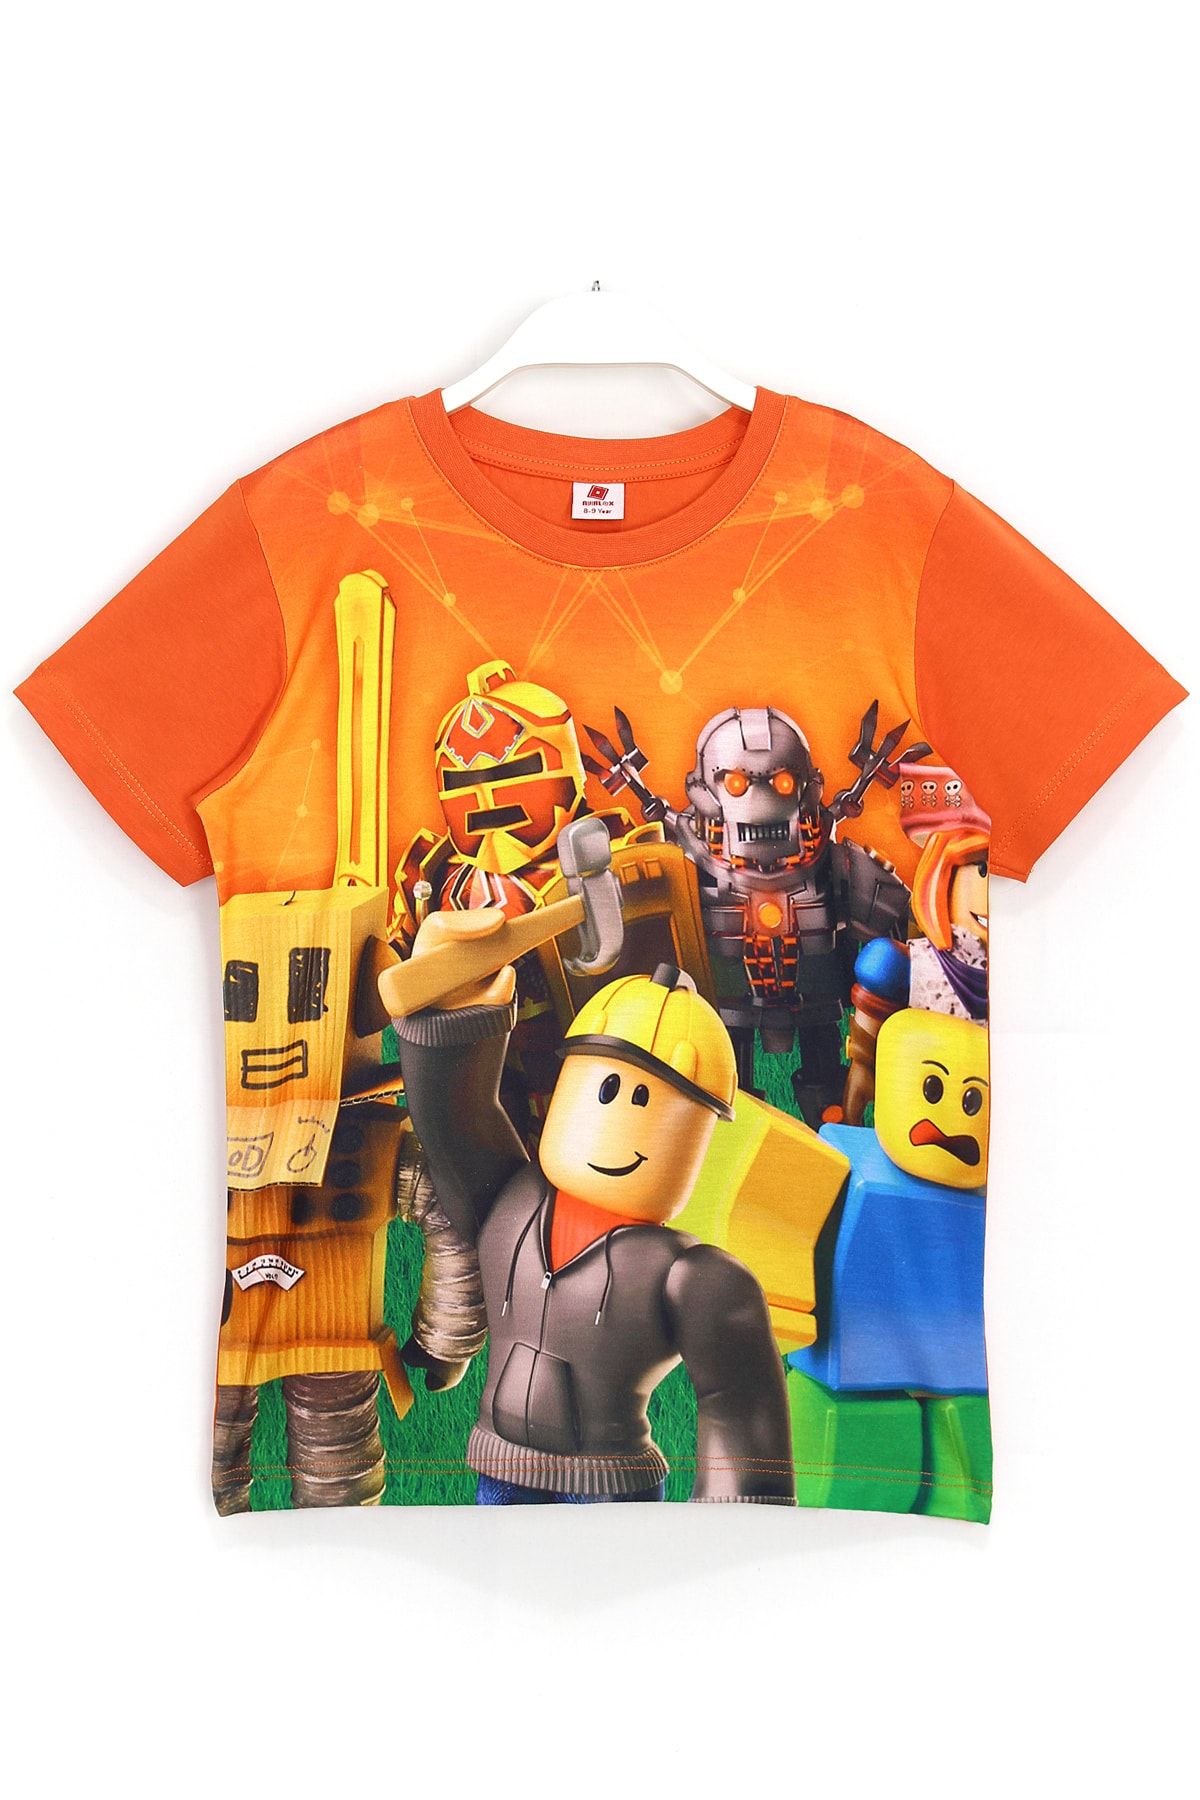 DobaKids Erkek Çocuk Oyun 3d Roblox Baskılı T-shirt Turuncu